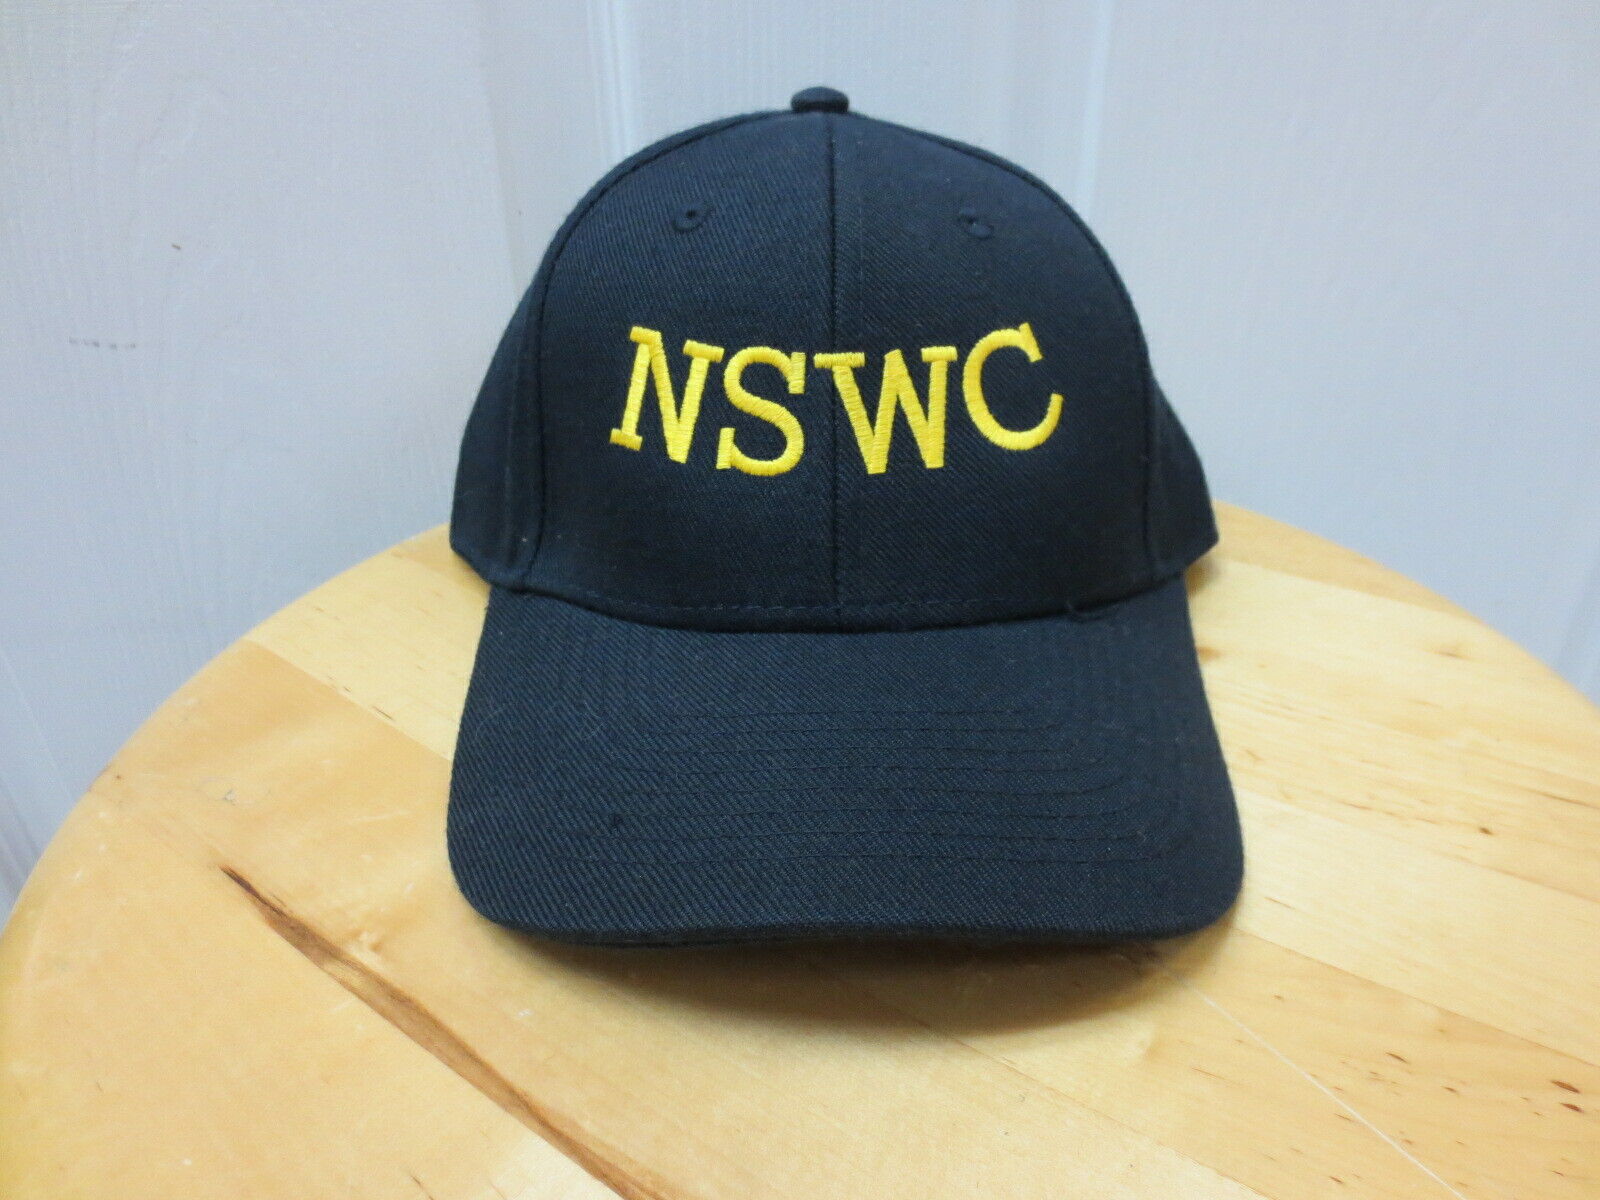 U.S. Navy Naval Special Warfare Center (NSWC) Ball Cap-Rare Collectible-NOS